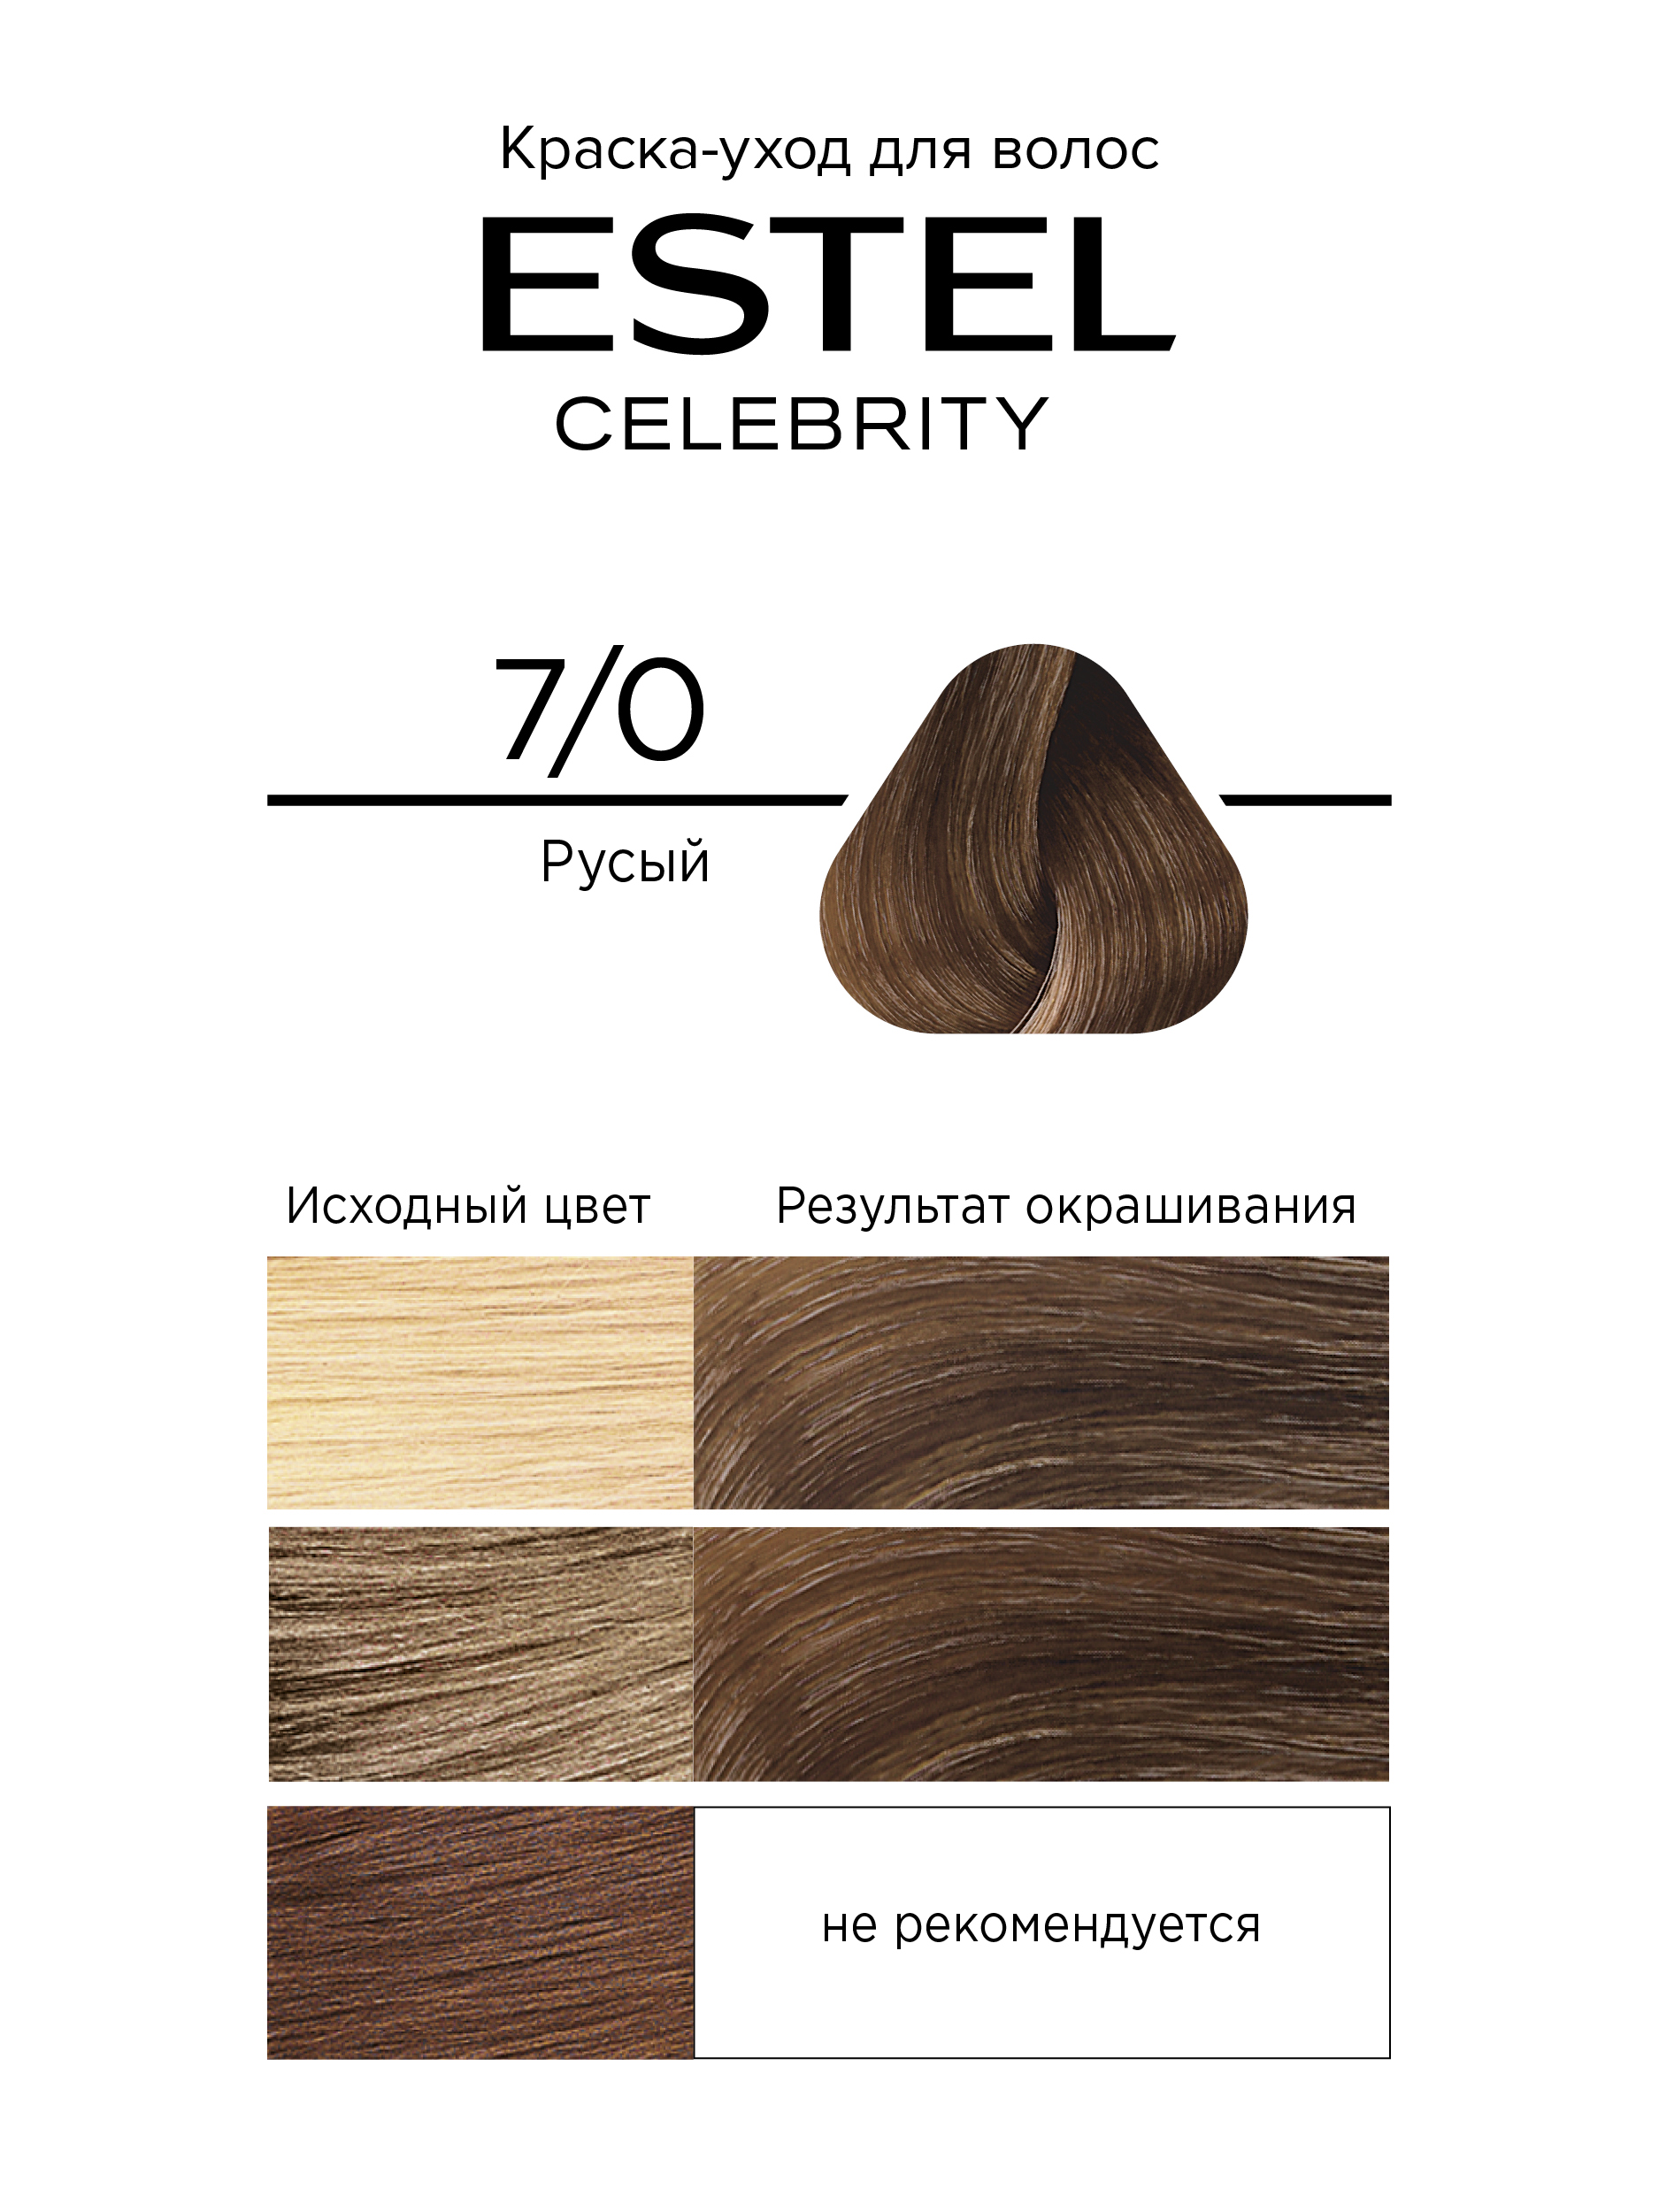 Краска для волос Estel Celebrity тон 7.0 русый